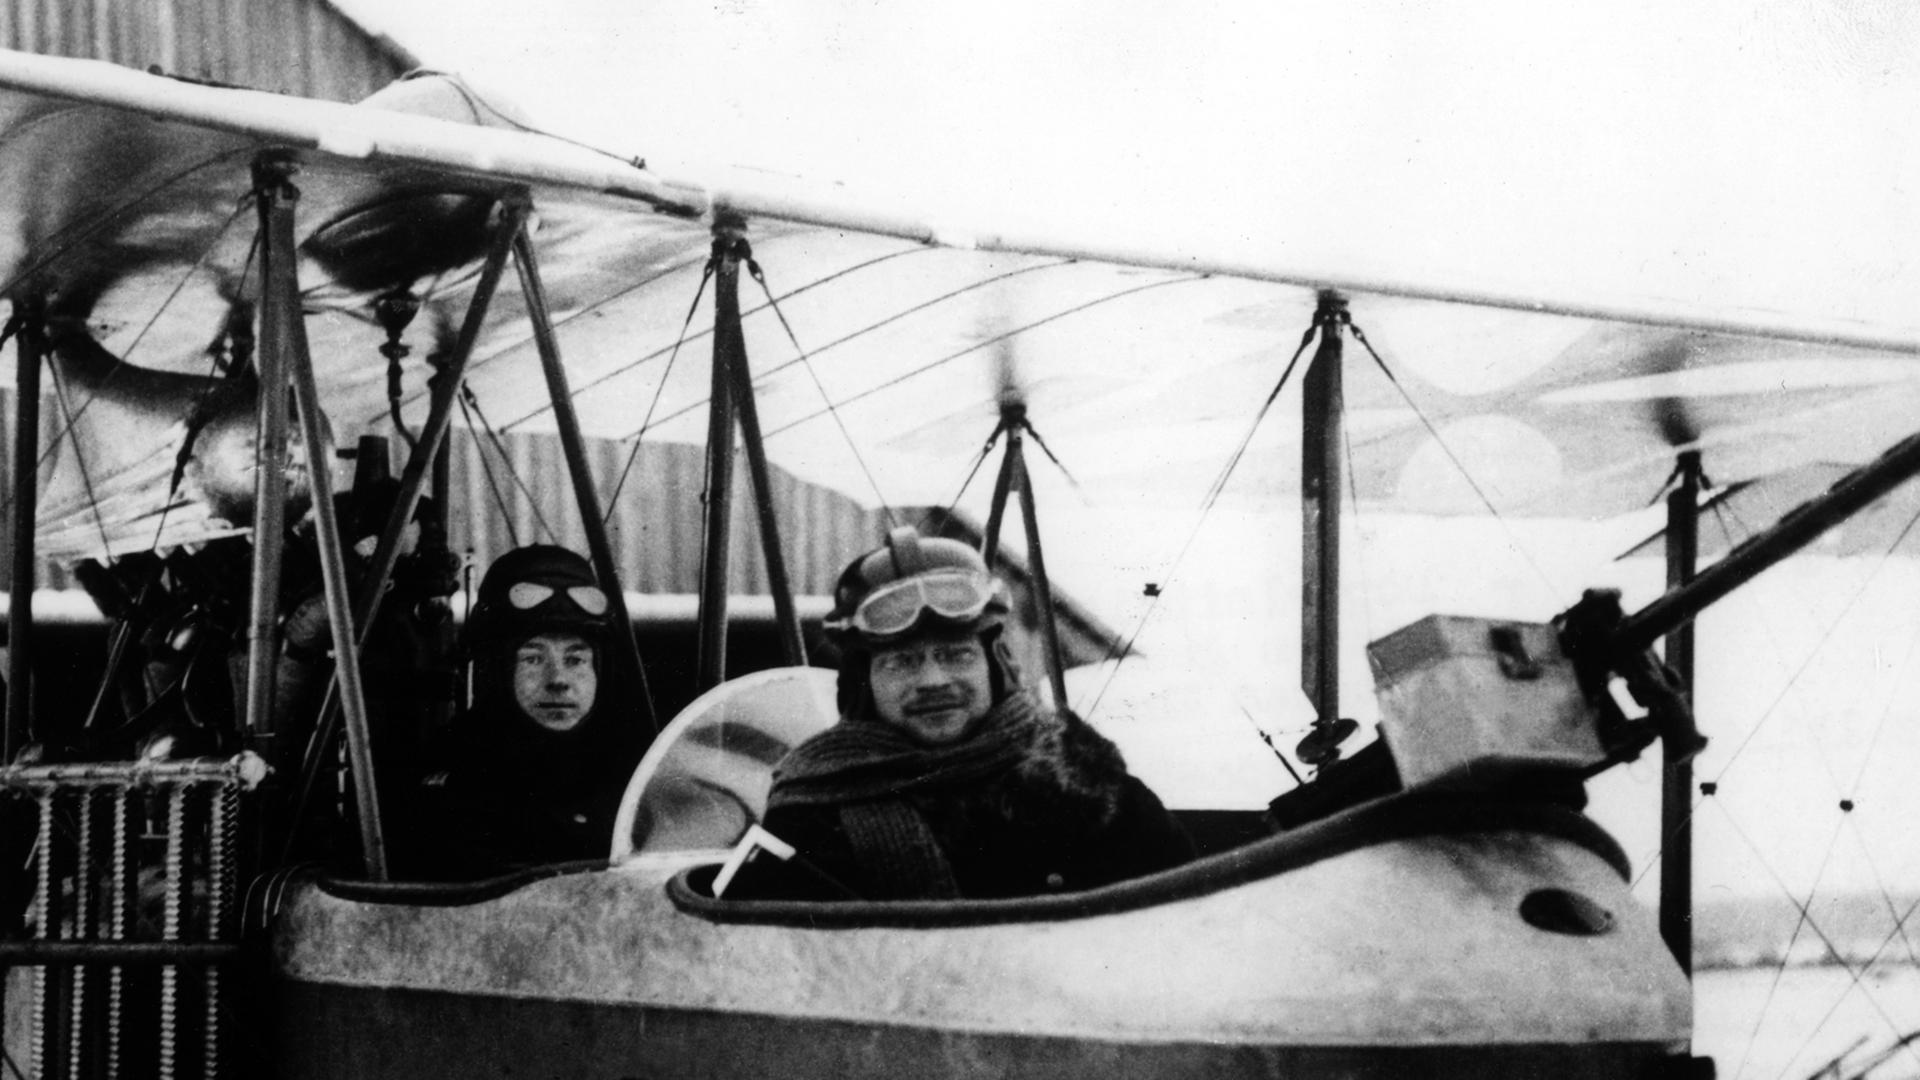 Doppelsitziges Flugzeug der deutschen Luftwaffe im ersten Weltkrieg mit nach hinten gesetztem Motor und aufgesetztem Maschinengewehr. (Undatiertes Archivbild aufgenommen zwischen 1914 und 1918).